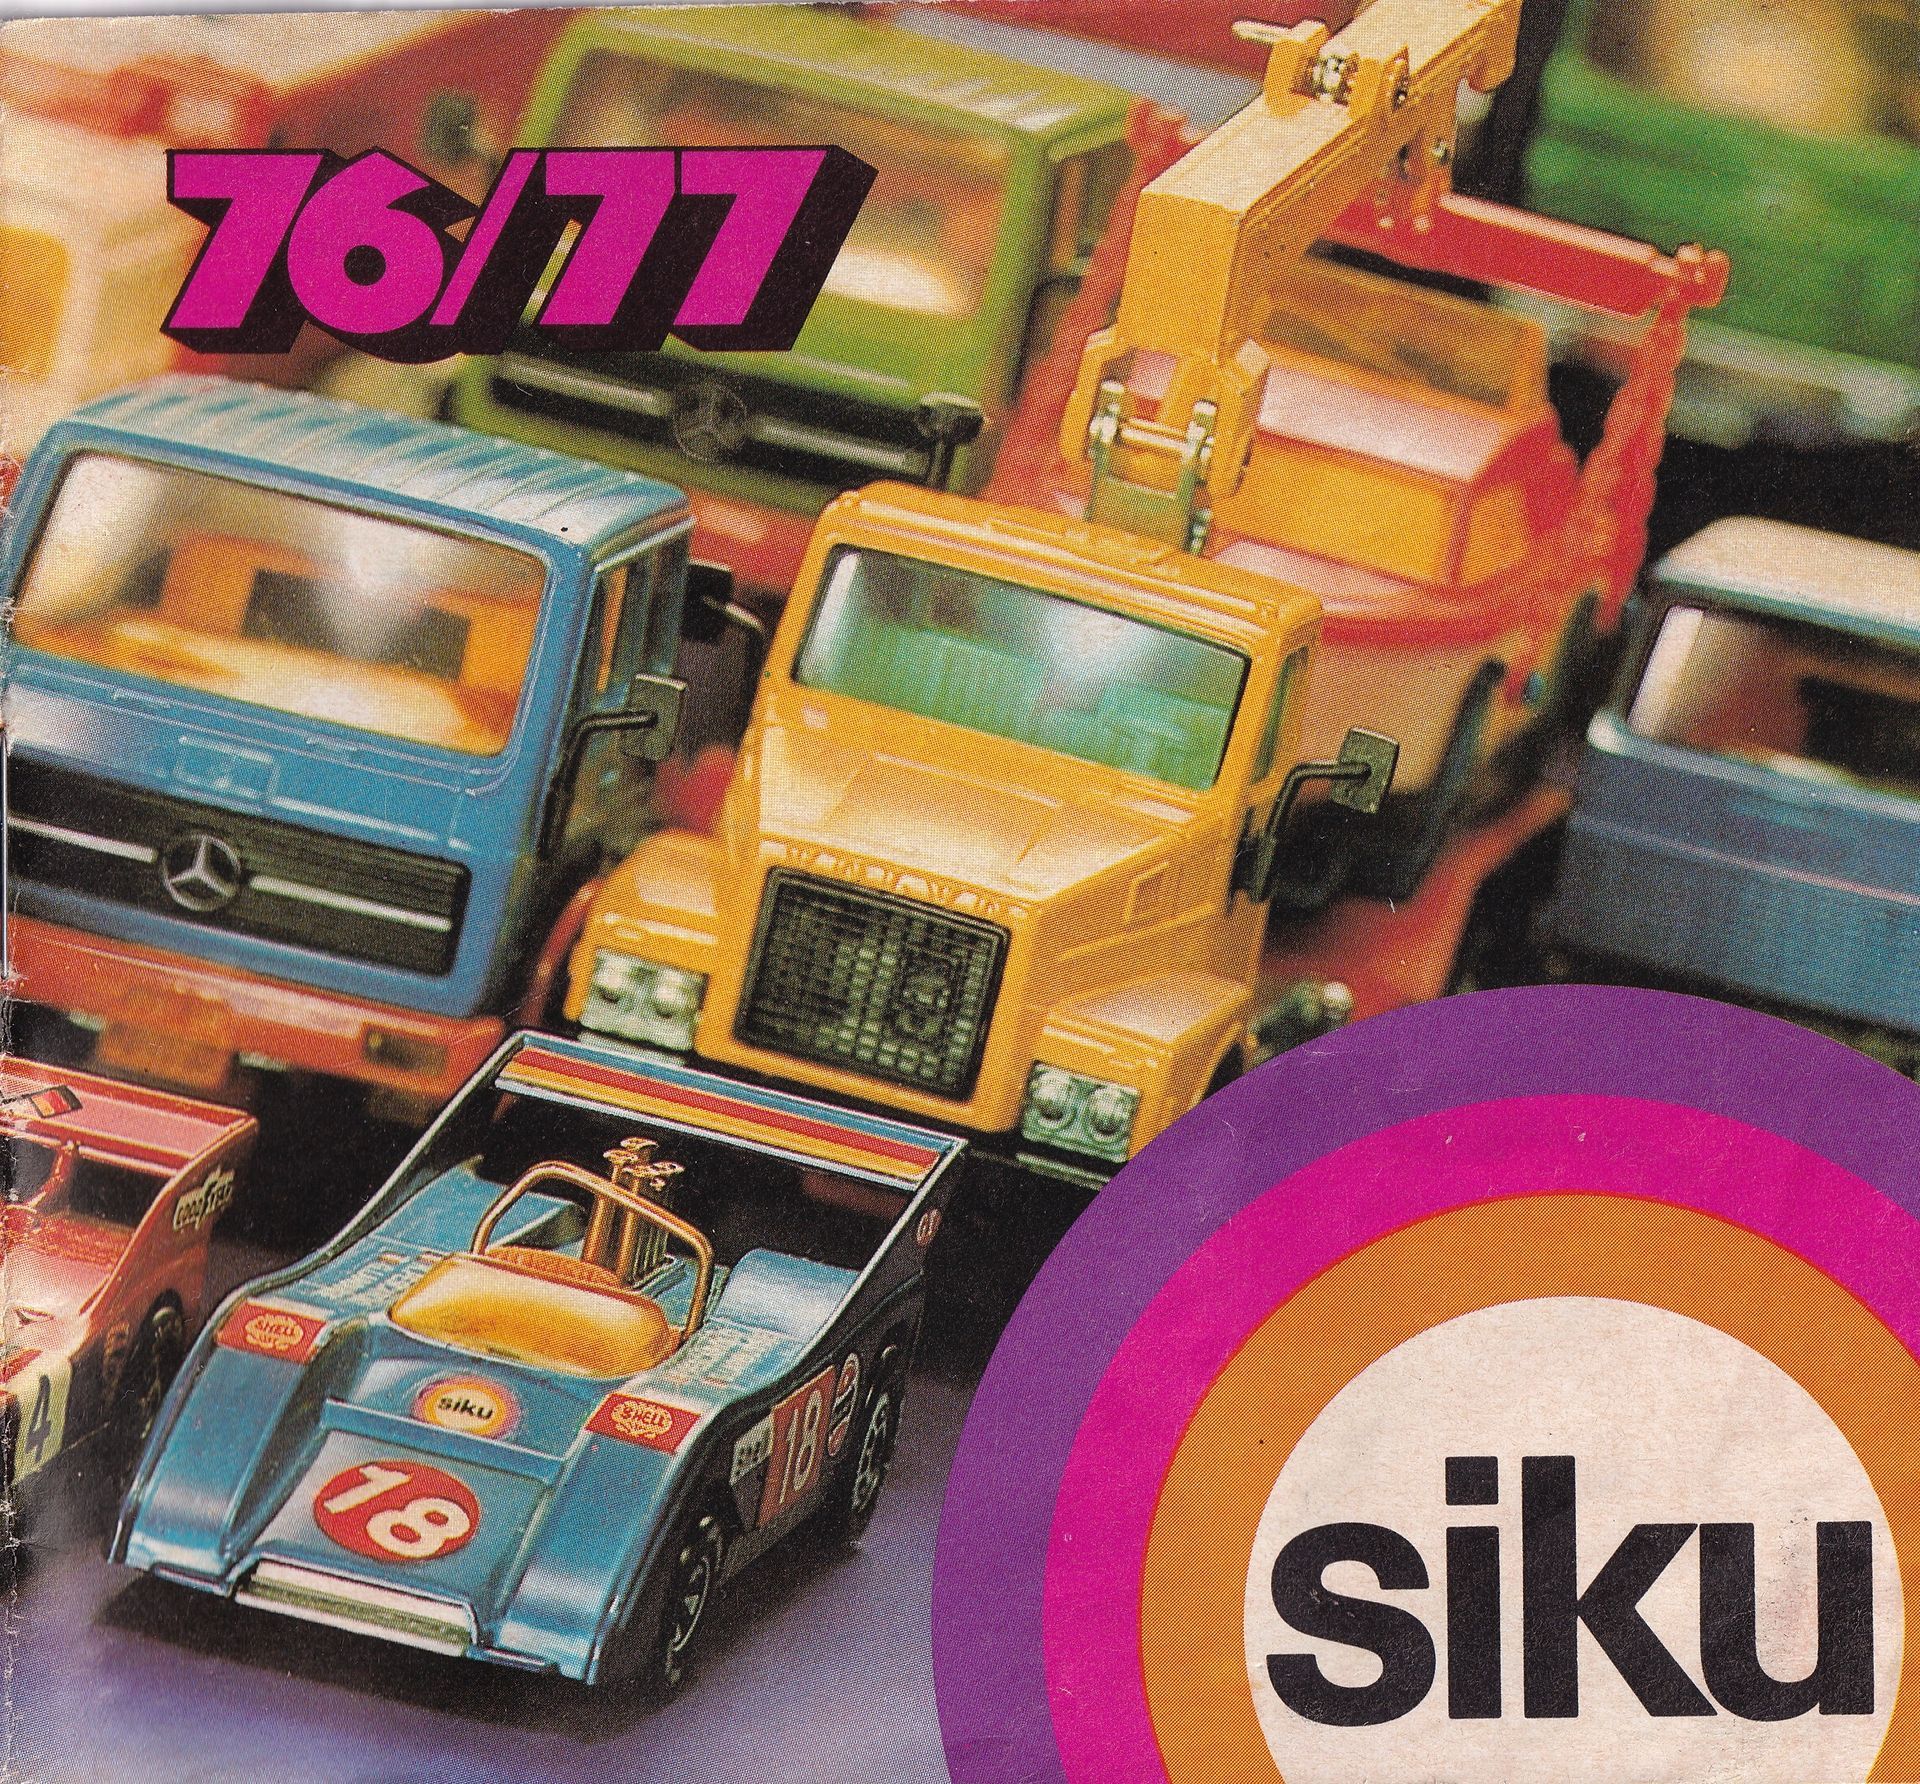 Siku Catalogue 1976-77